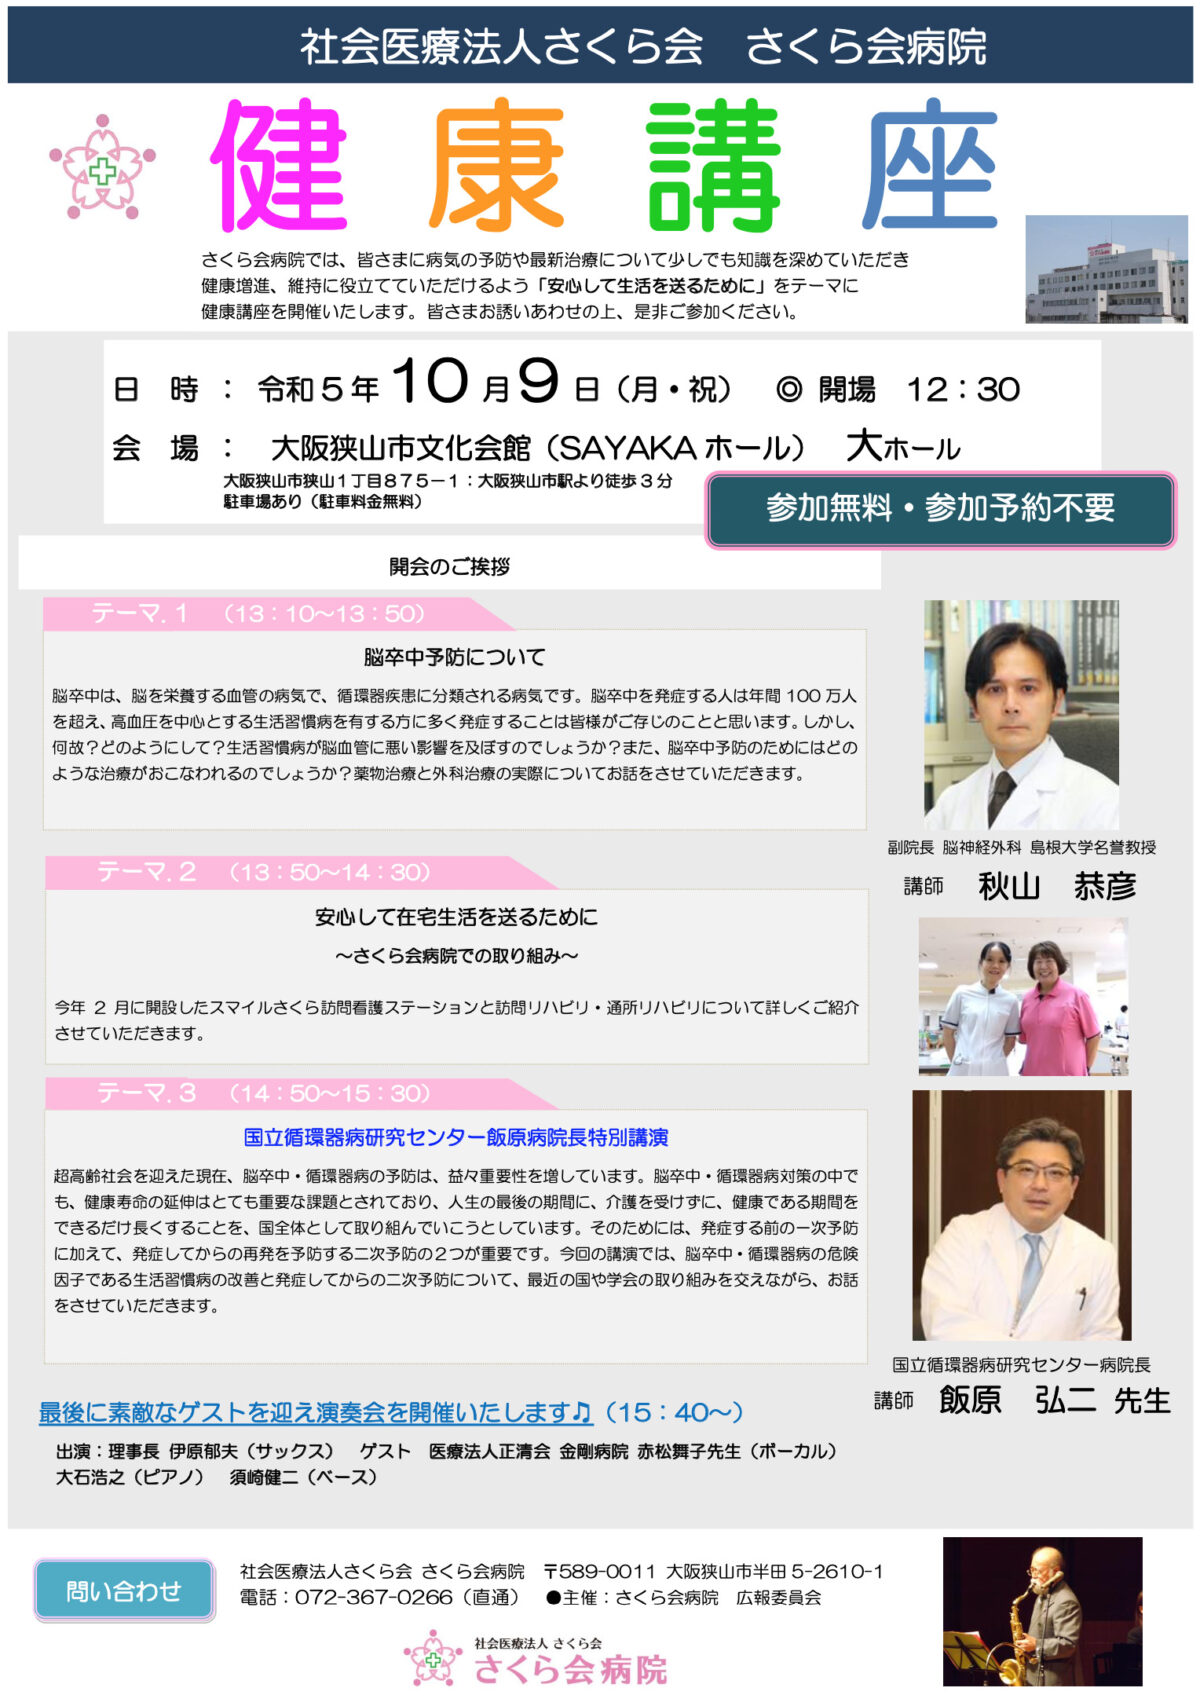 10/9さくら会病院主催の健康講座開催@大阪狭山市SAYAKAホール：